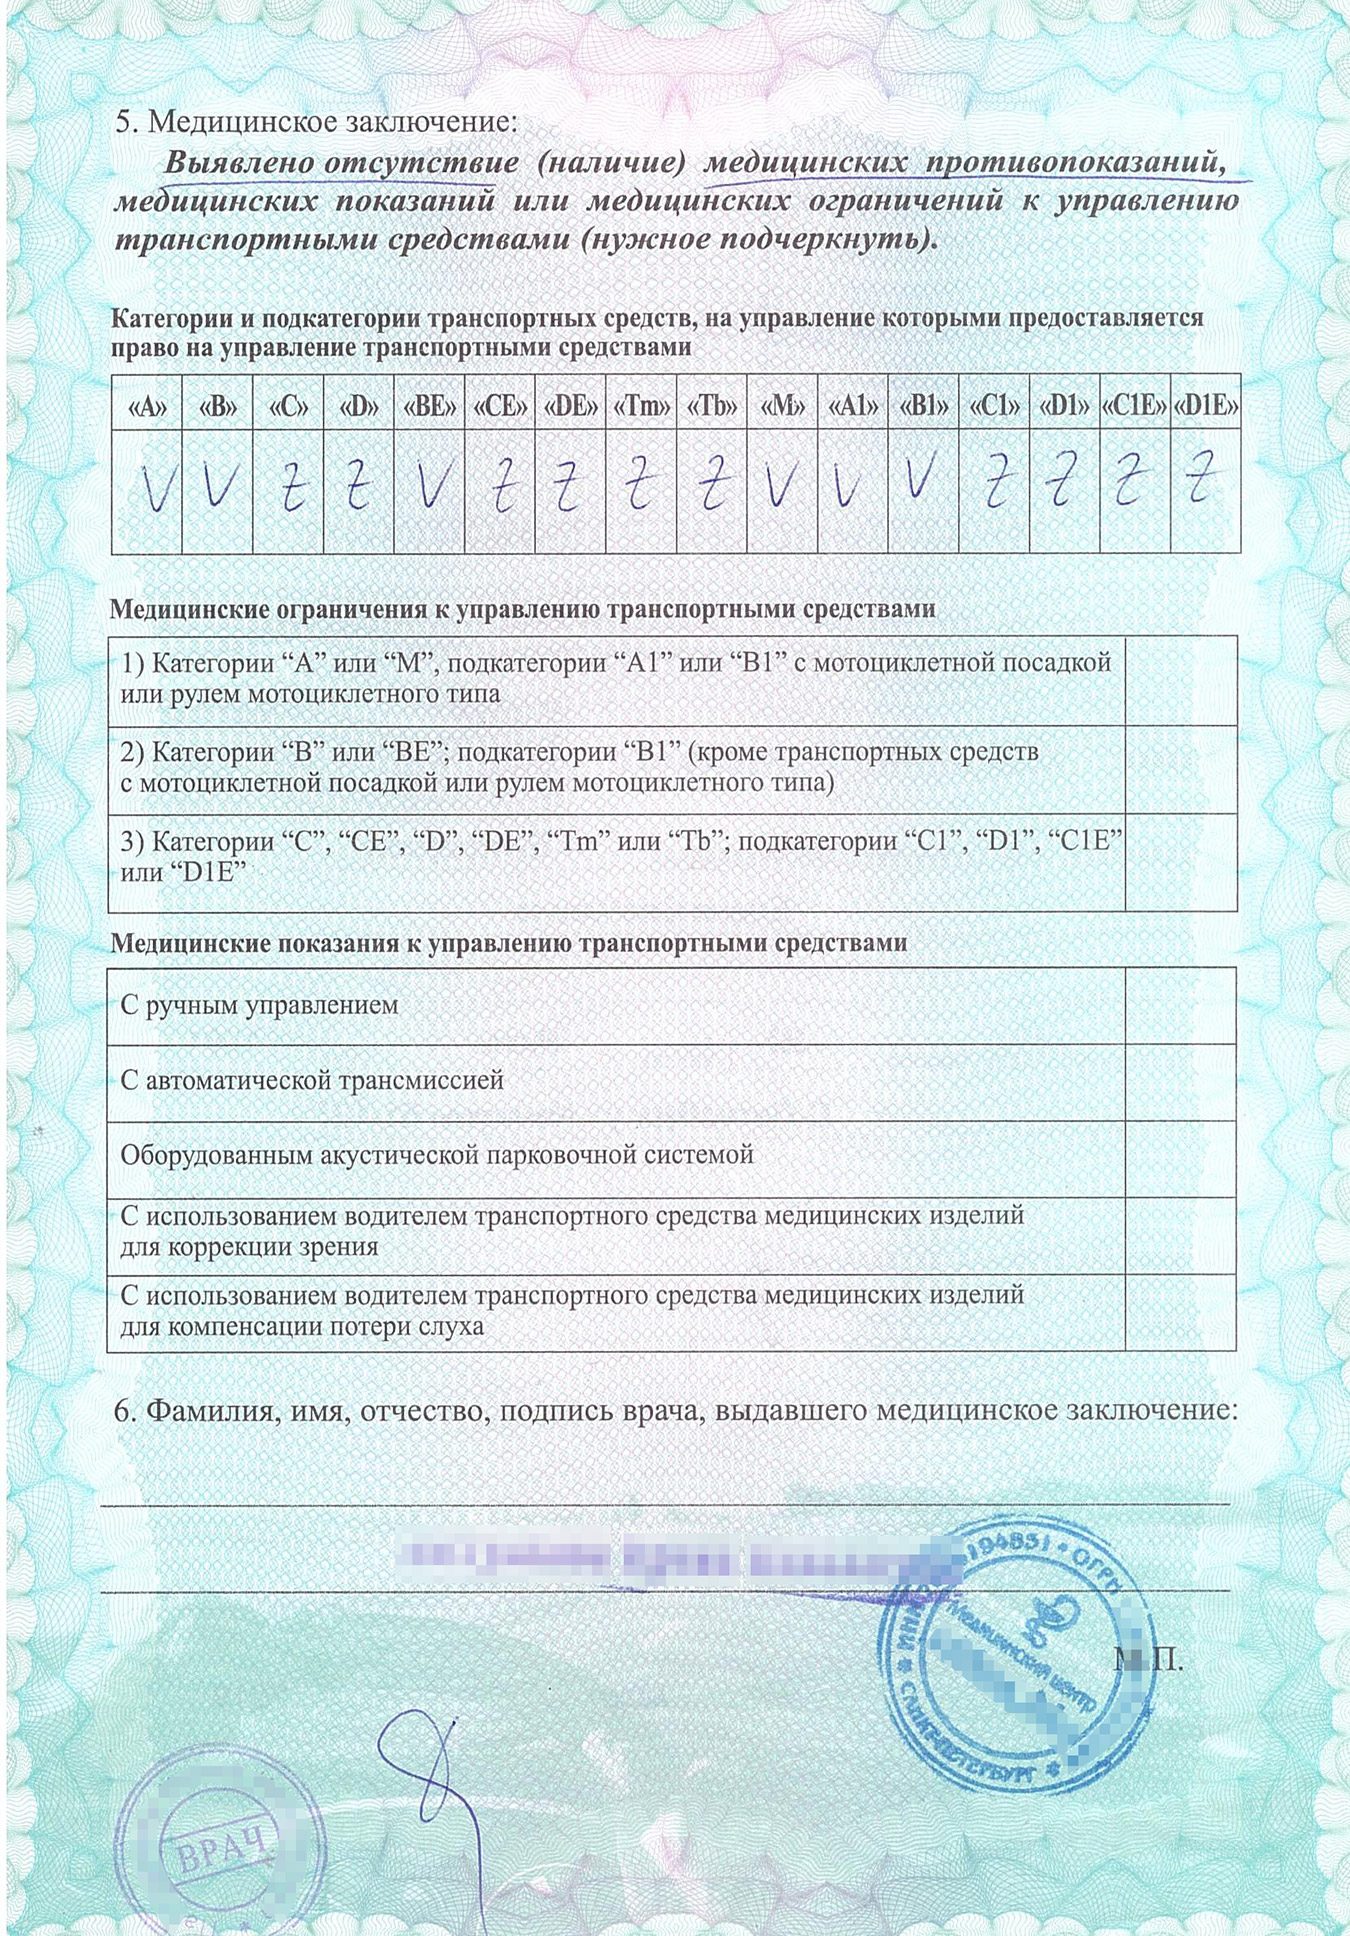 Регистрация на временное проживание в россии для украинцев 2020 году